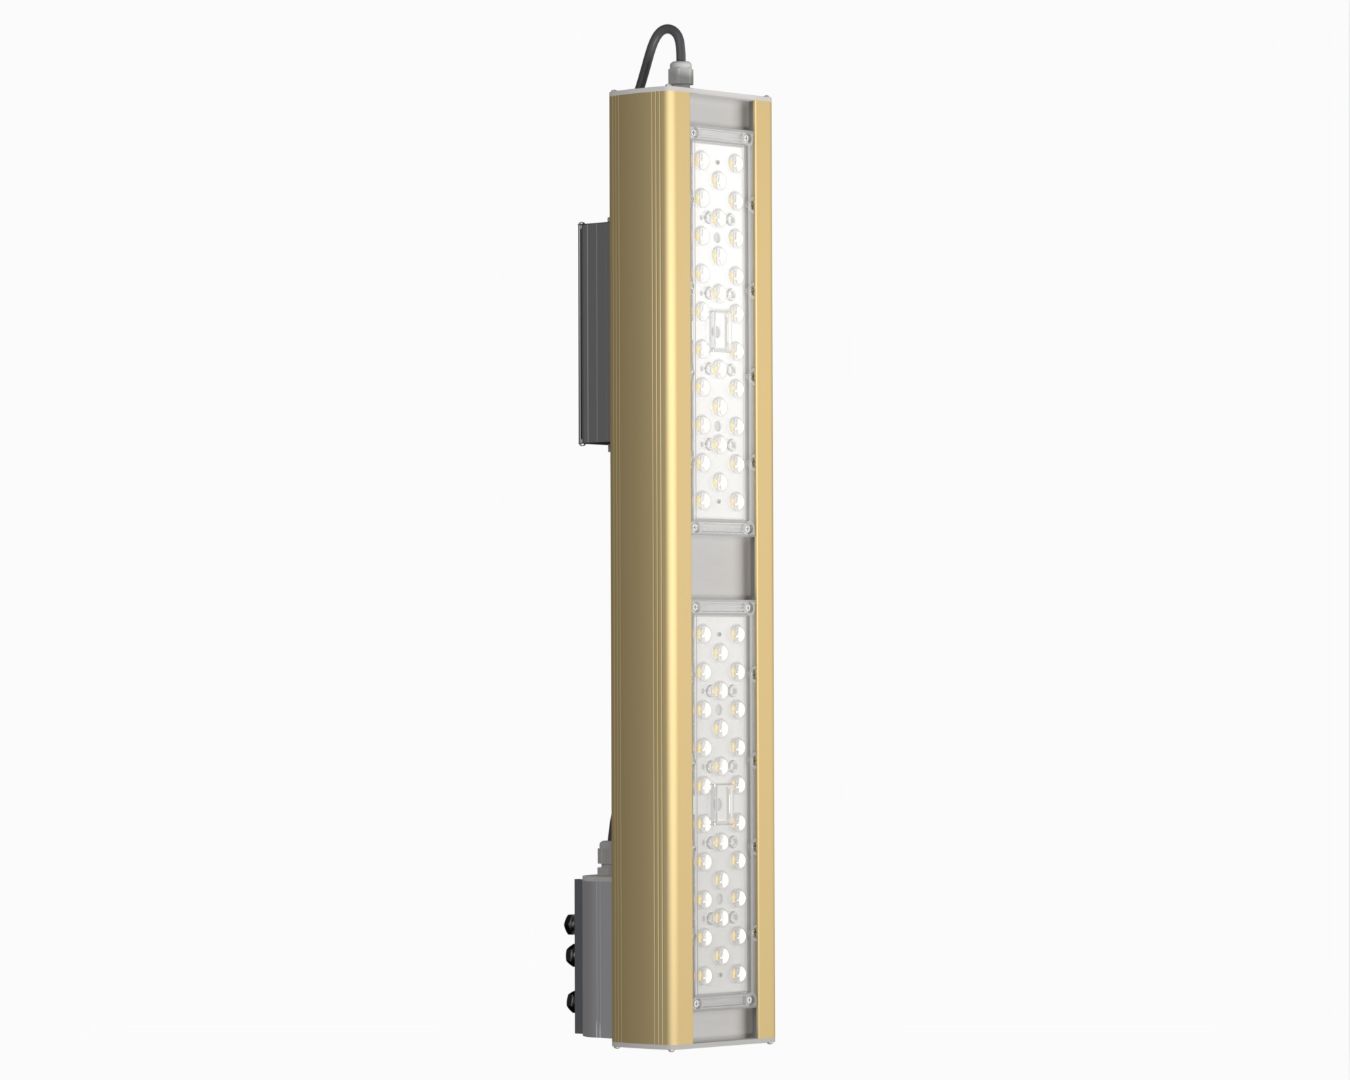 Магистраль GOLD, консоль K-1, 125 Вт, 150X80°, светодиодный светильник